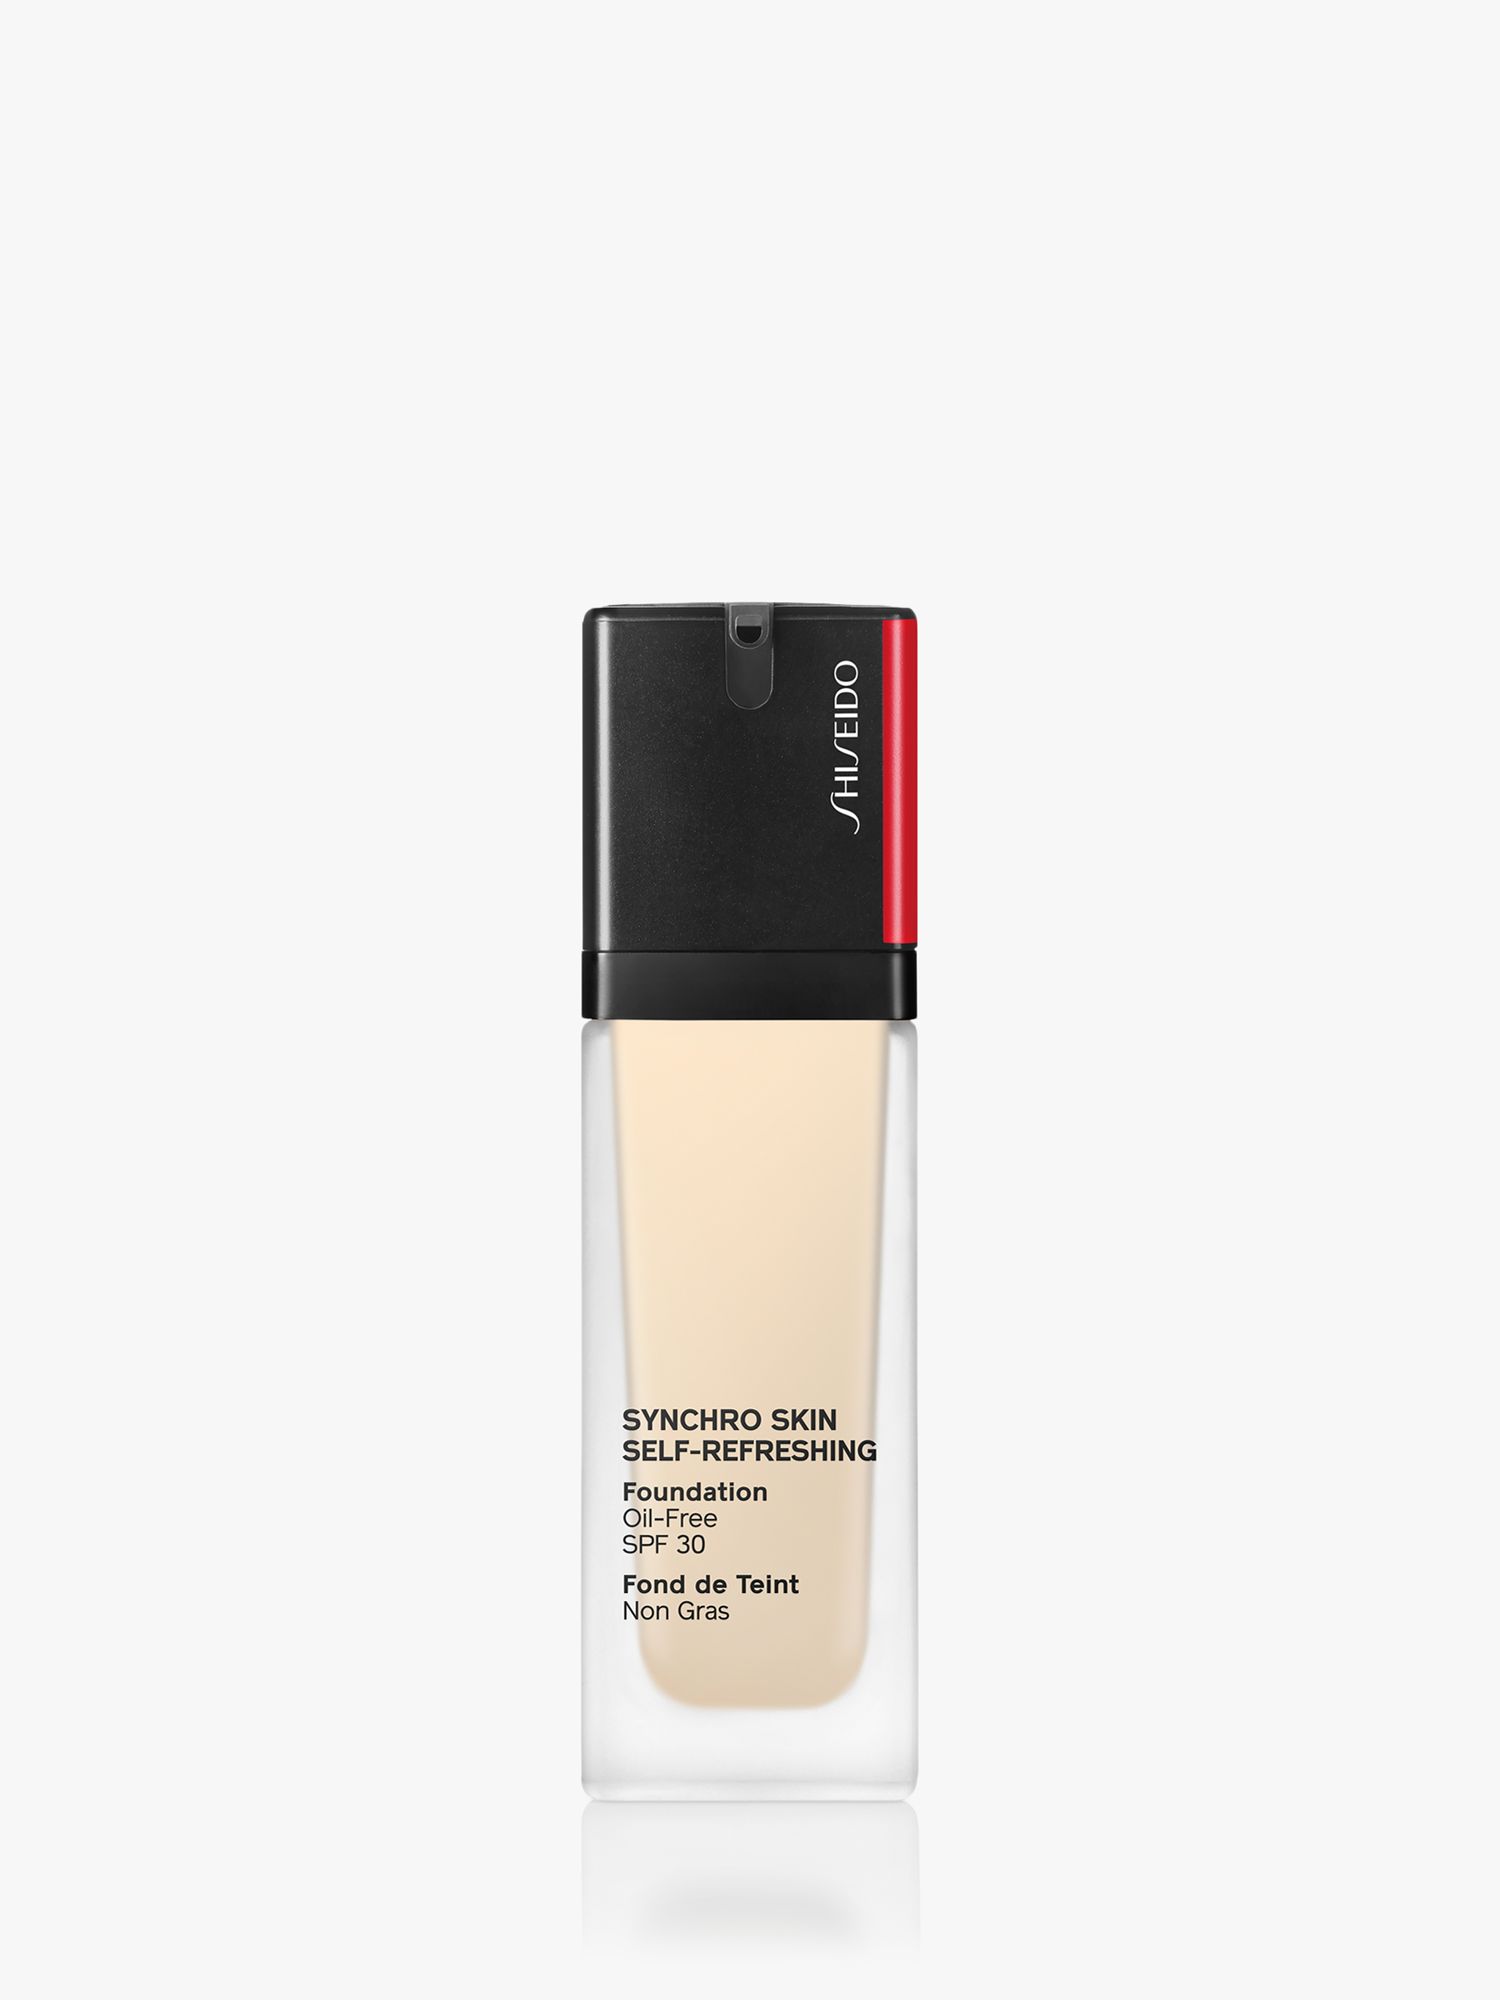 Shiseido Synchro Skin Self-Refreshing Foundation SPF 30, 110 Alabaster 1